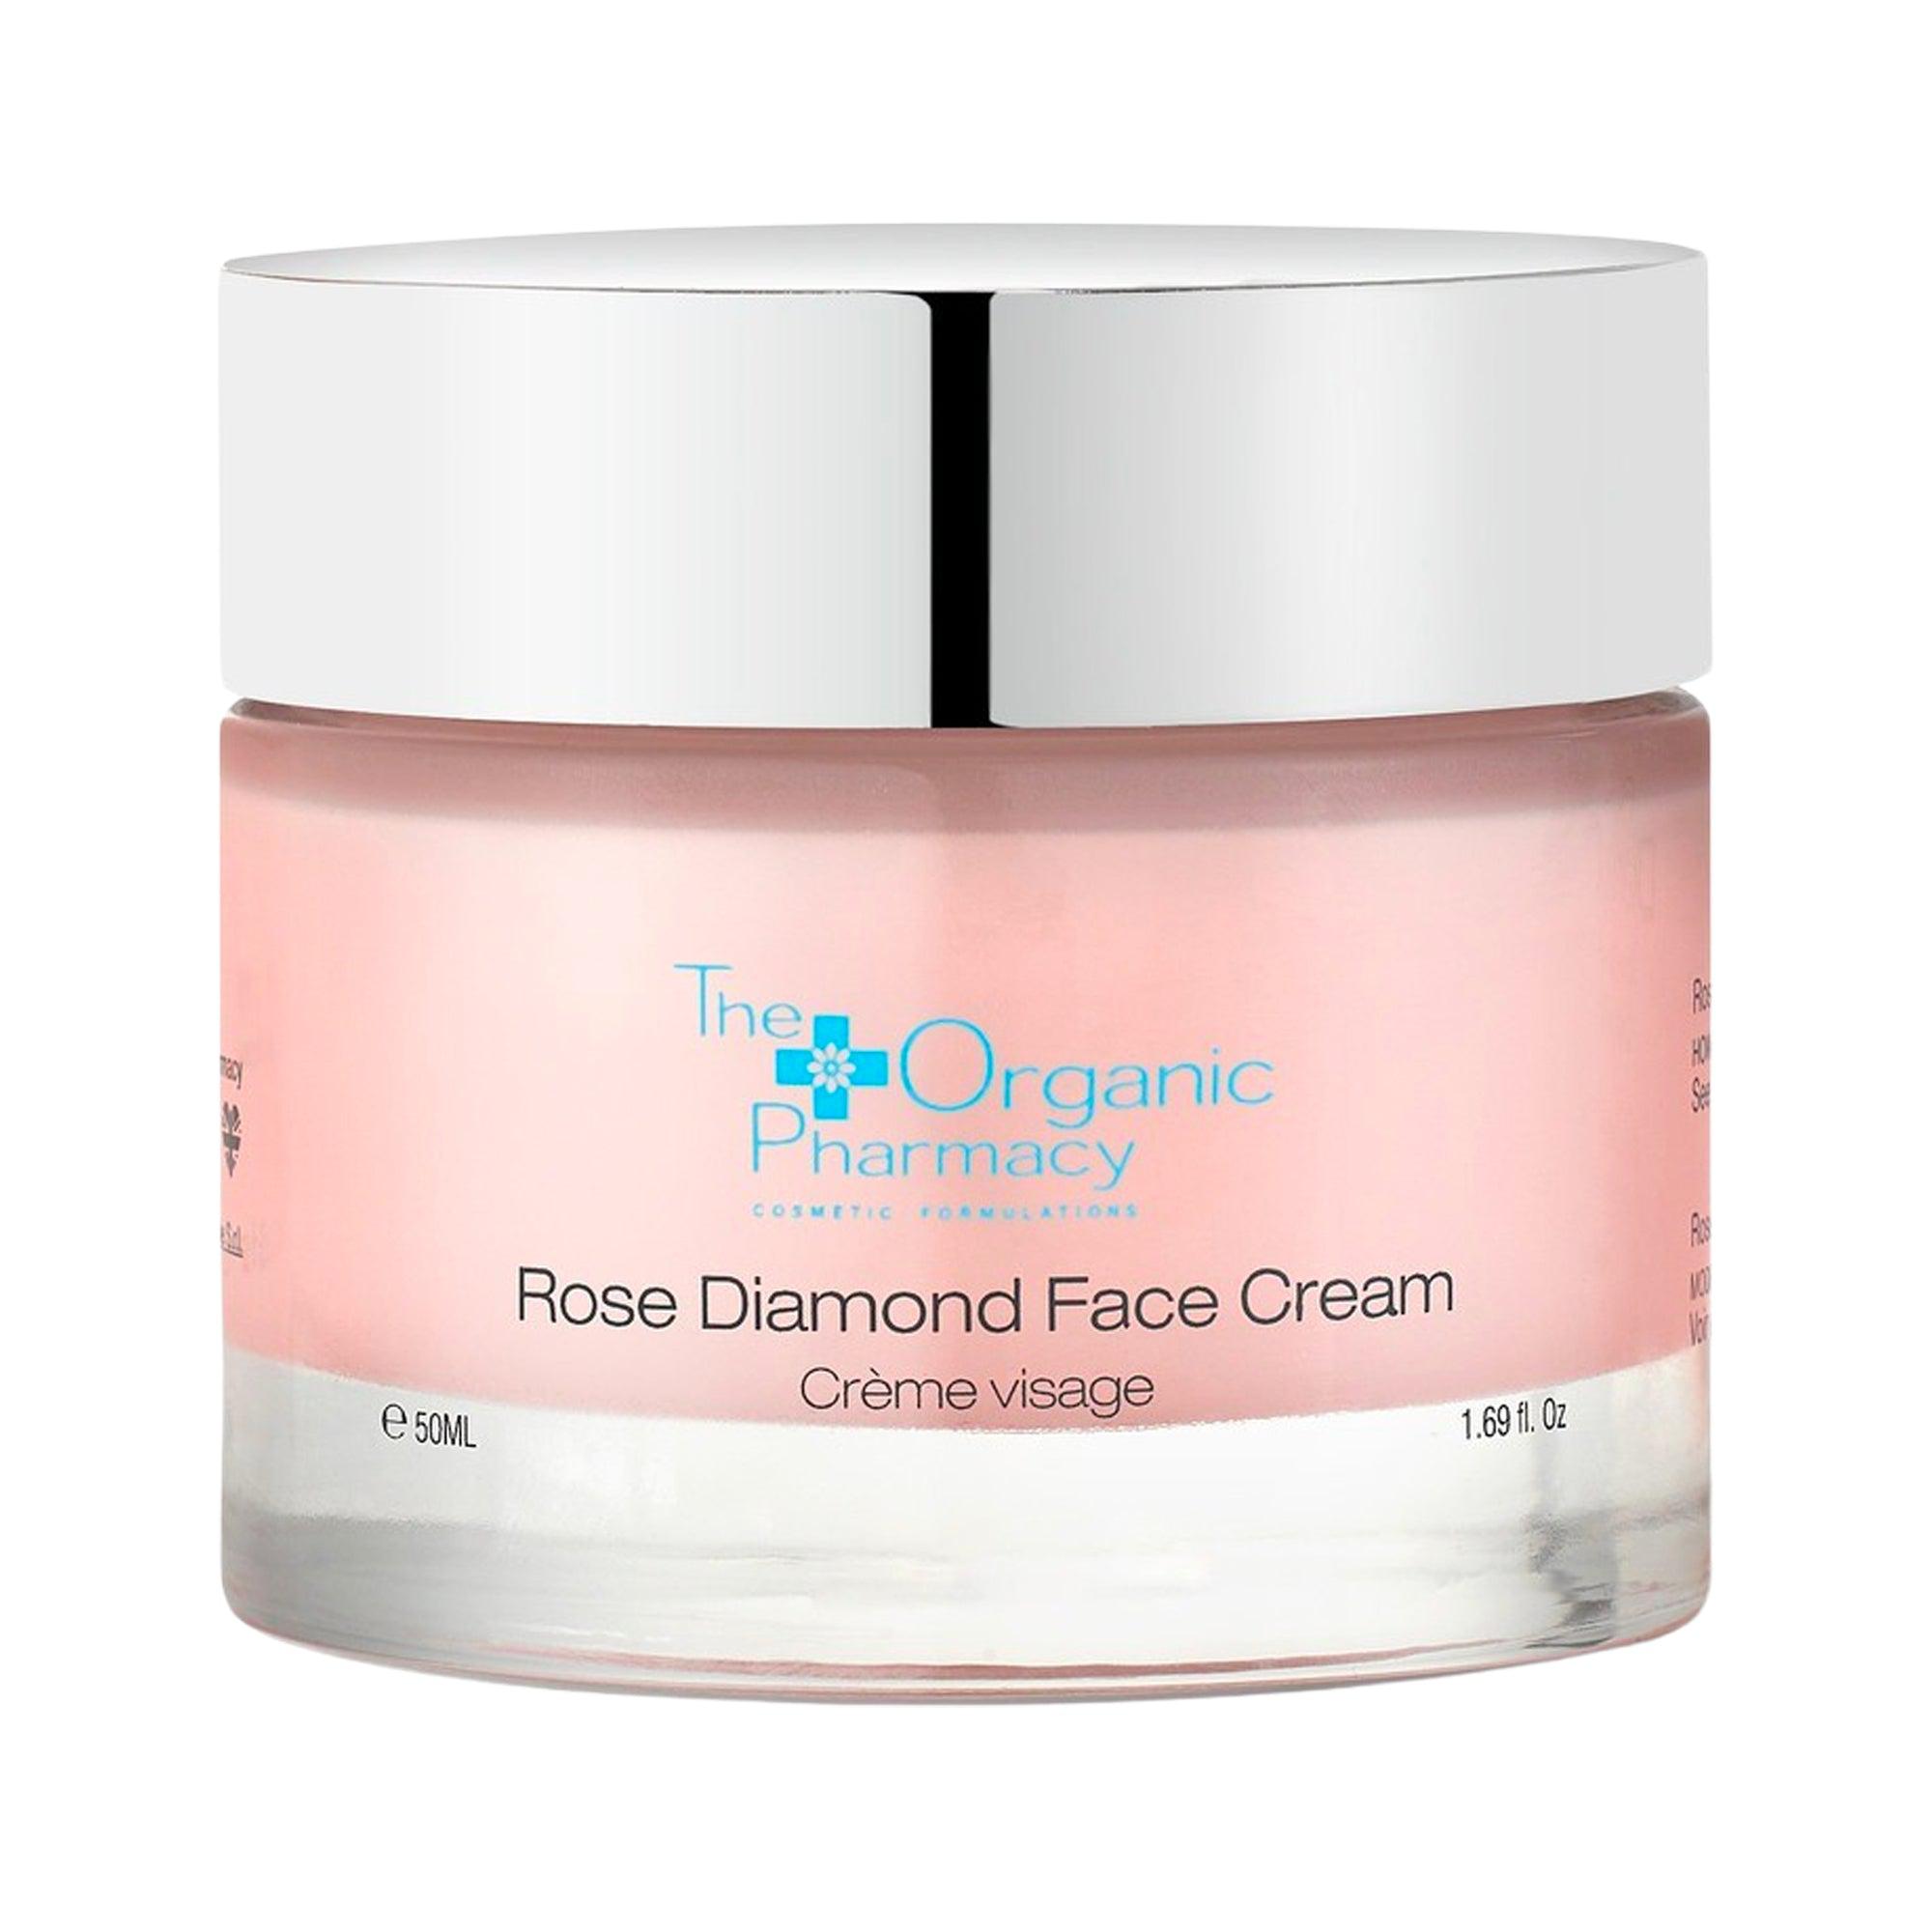 Crème visage – Rose diamond face cream Face cream – Rose diamond face cream - The Organic Pharmacy